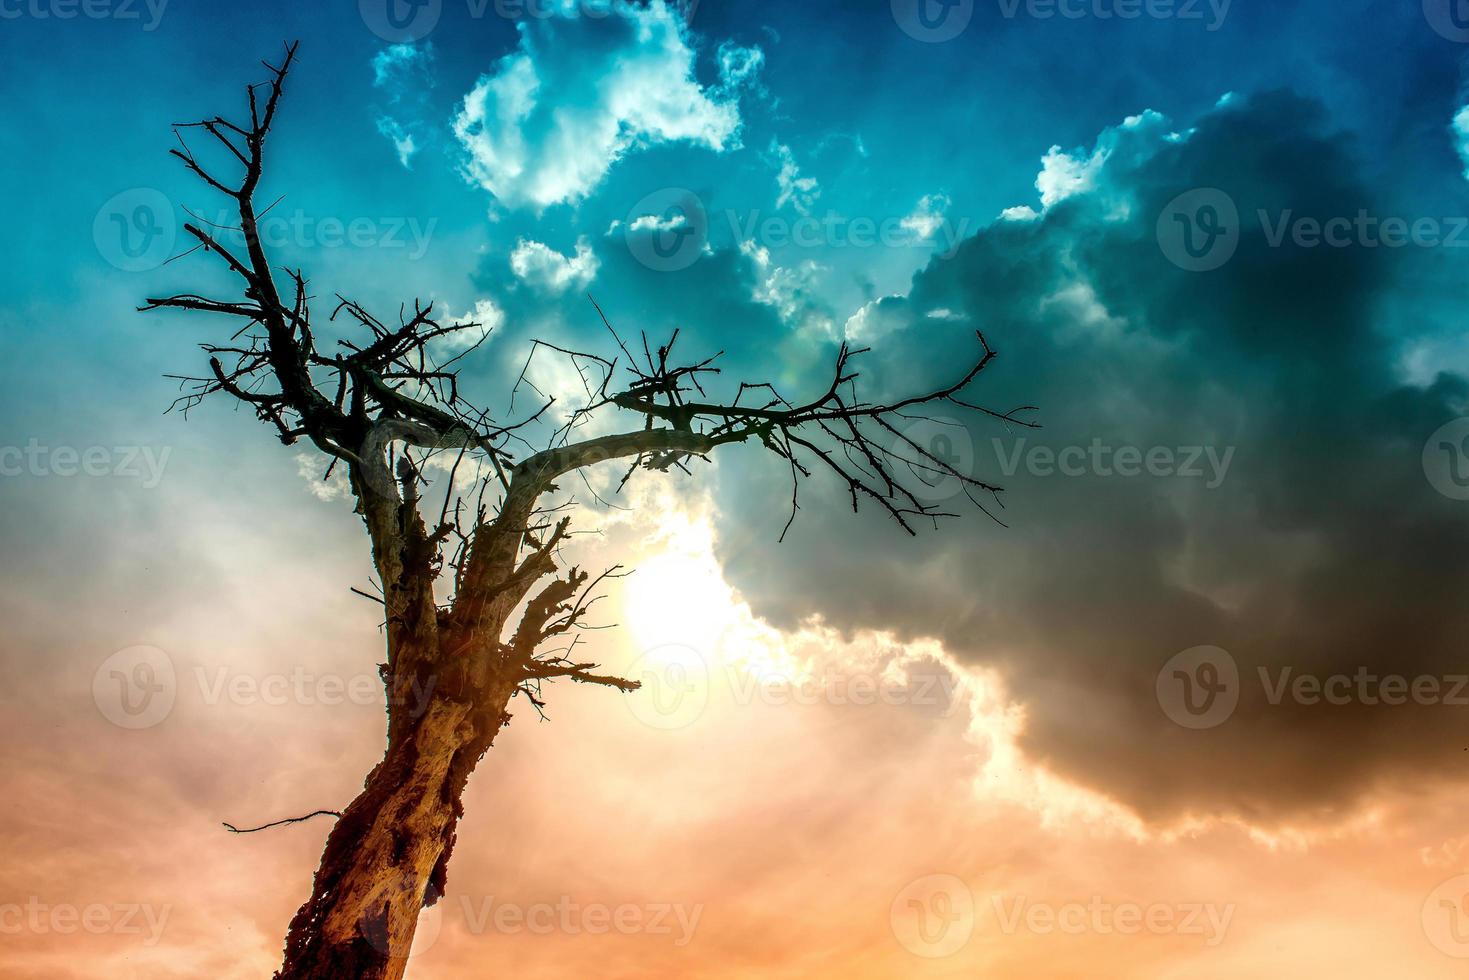 árvore queimada por um raio sob nuvens ameaçadoras foto